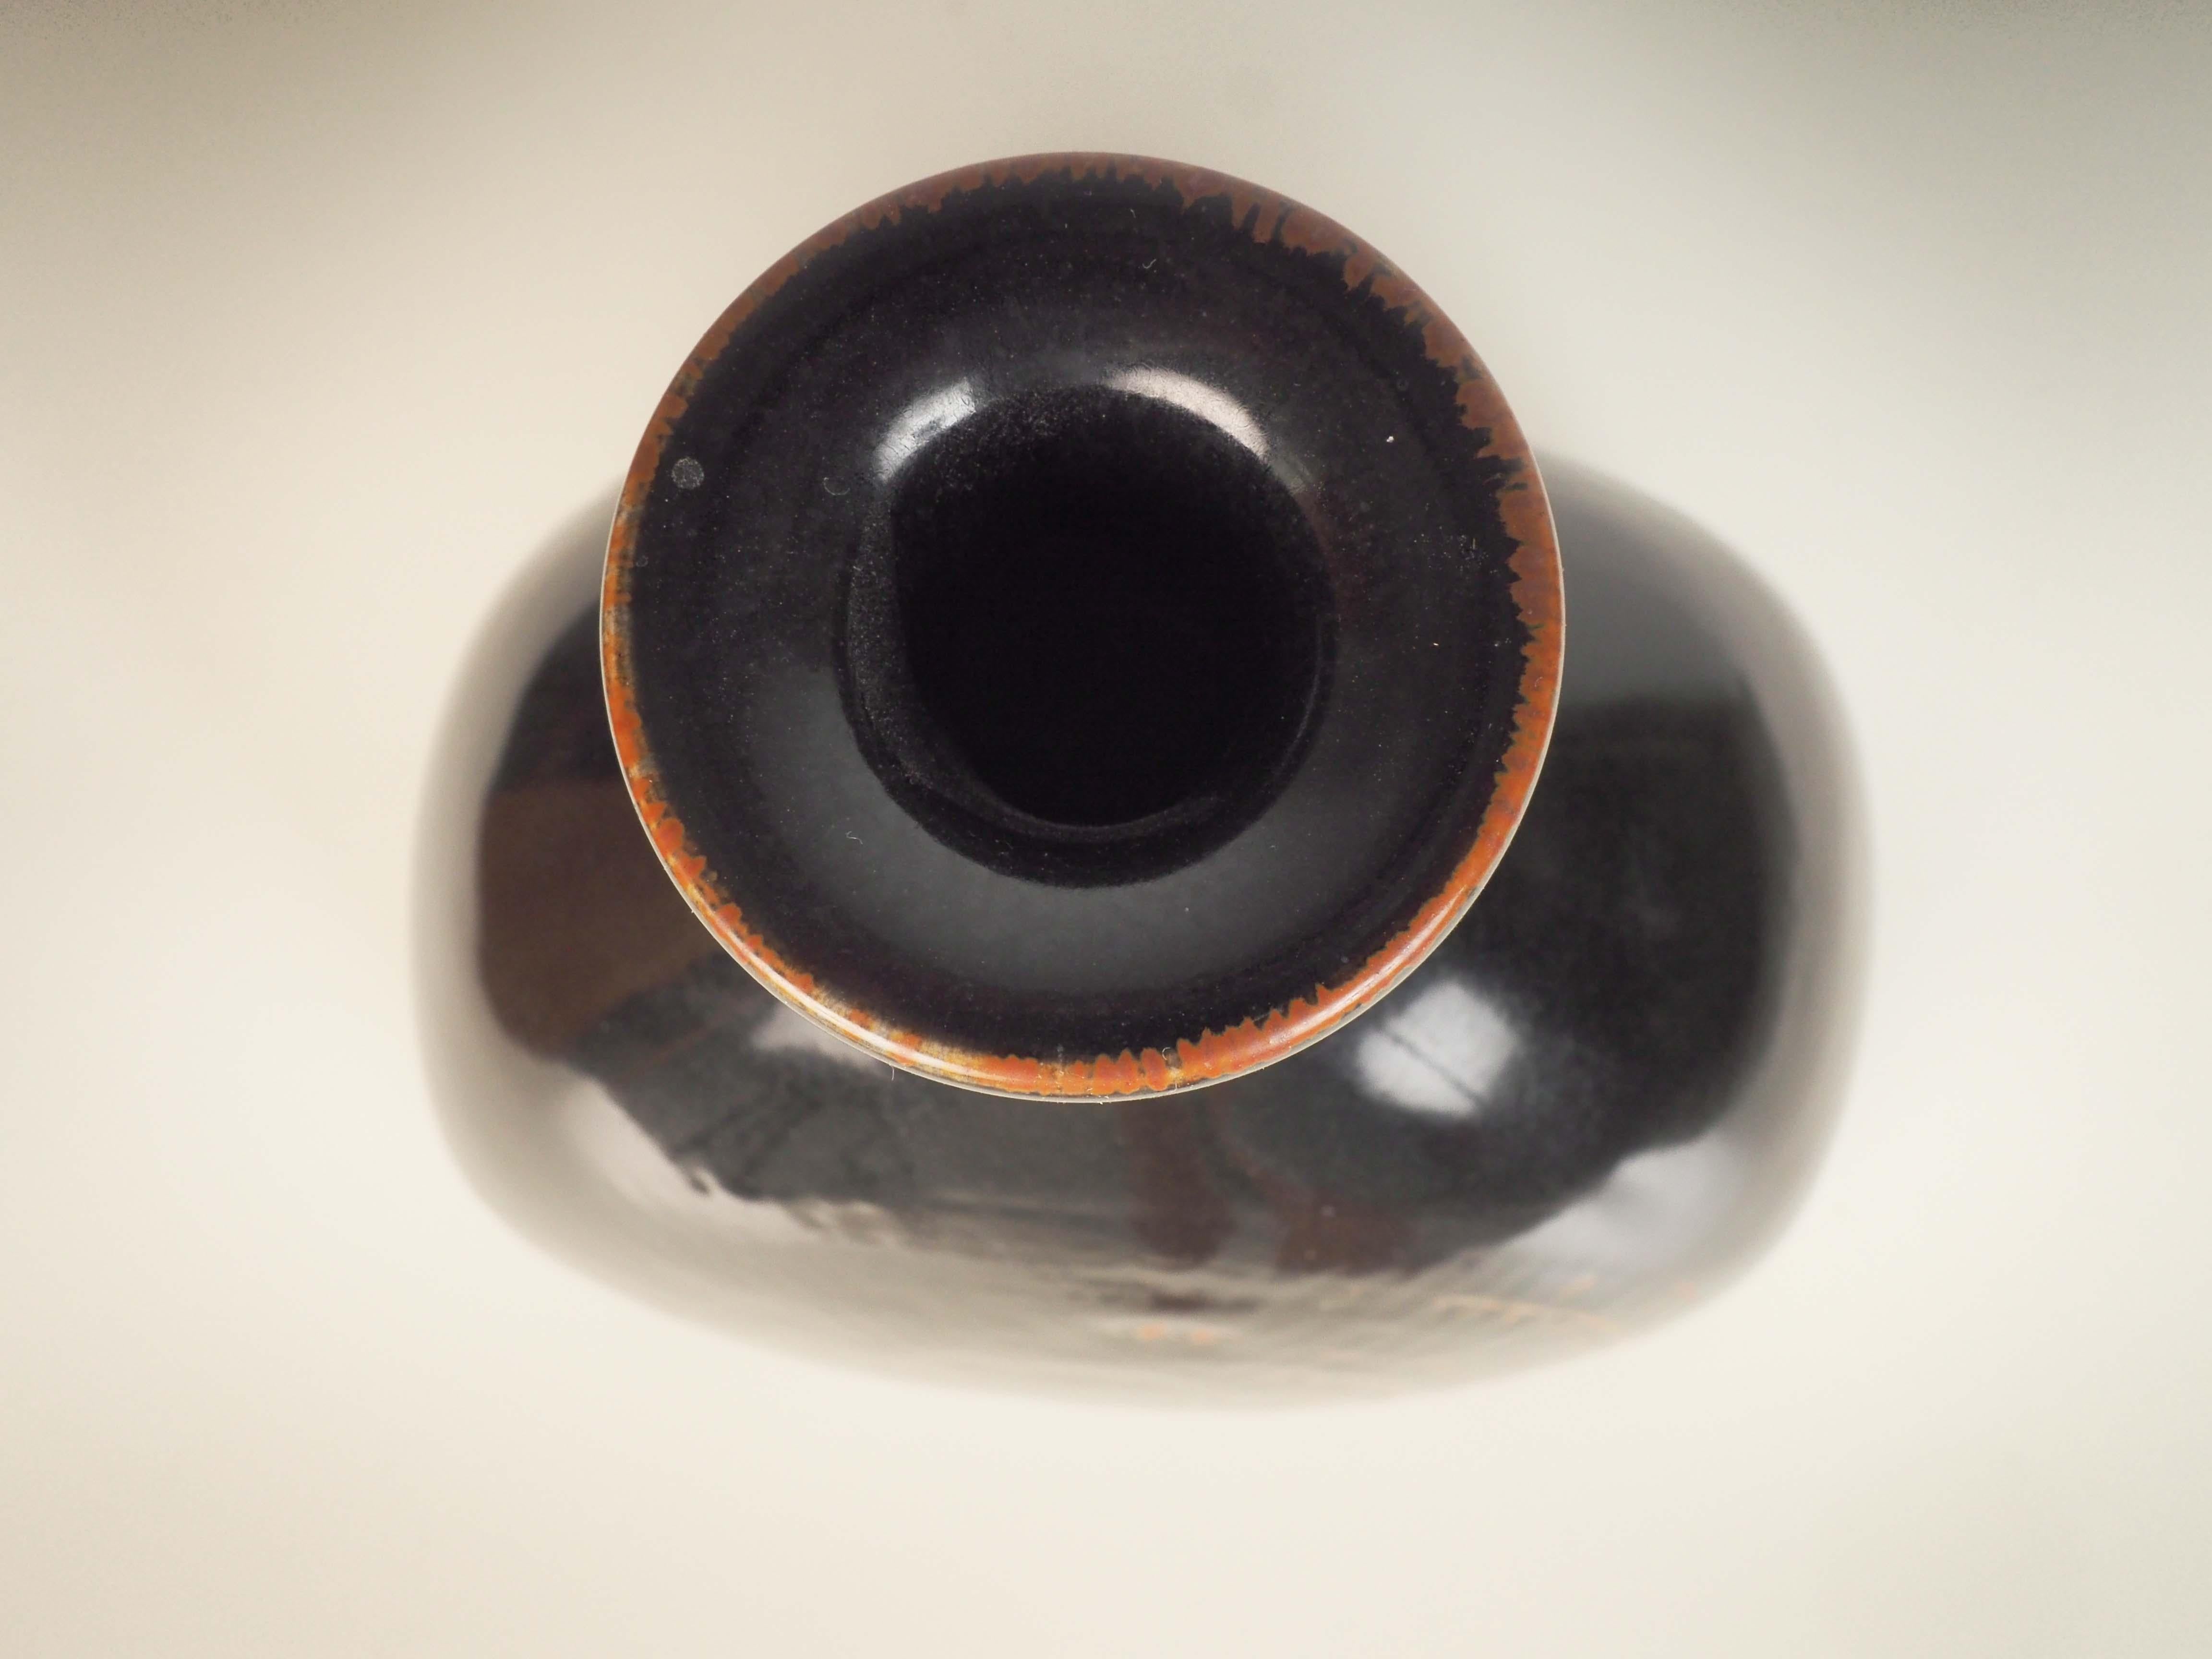 Vase aus Steingut, entworfen von Stig Lindberg im Gustavsbergs Studio, Schweden. Dieses Stück wurde 1970 hergestellt.
Die dunklere Glasur ist typisch für Lindbergs Arbeiten Ende der sechziger und Anfang der siebziger Jahre.